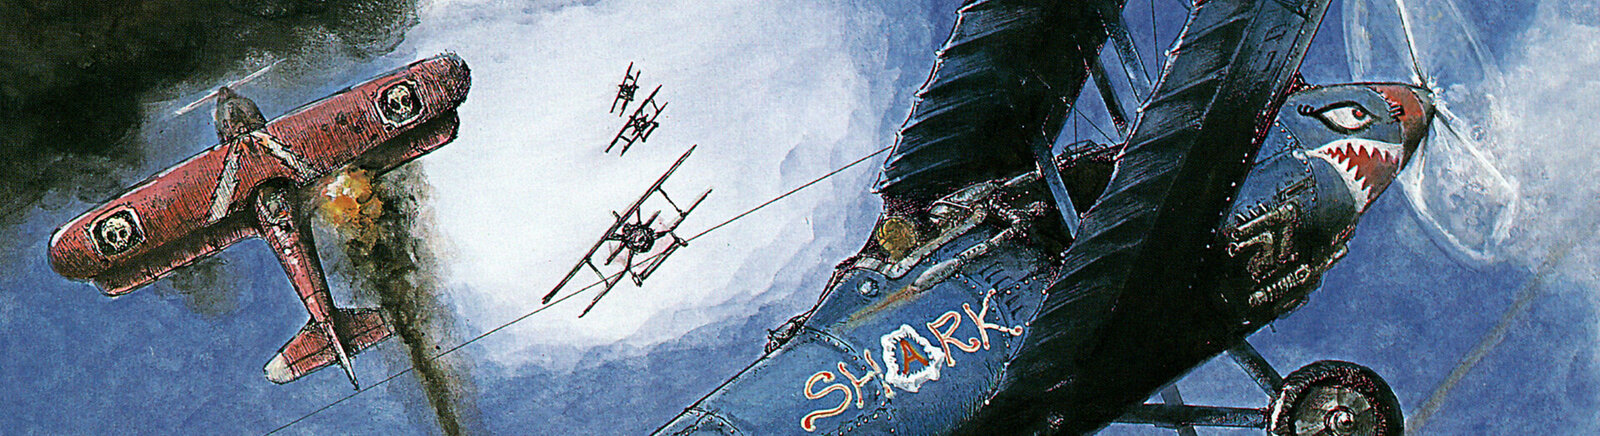 Дата выхода Sky Shark  на NES, Commodore 64 и ZX Spectrum в России и во всем мире